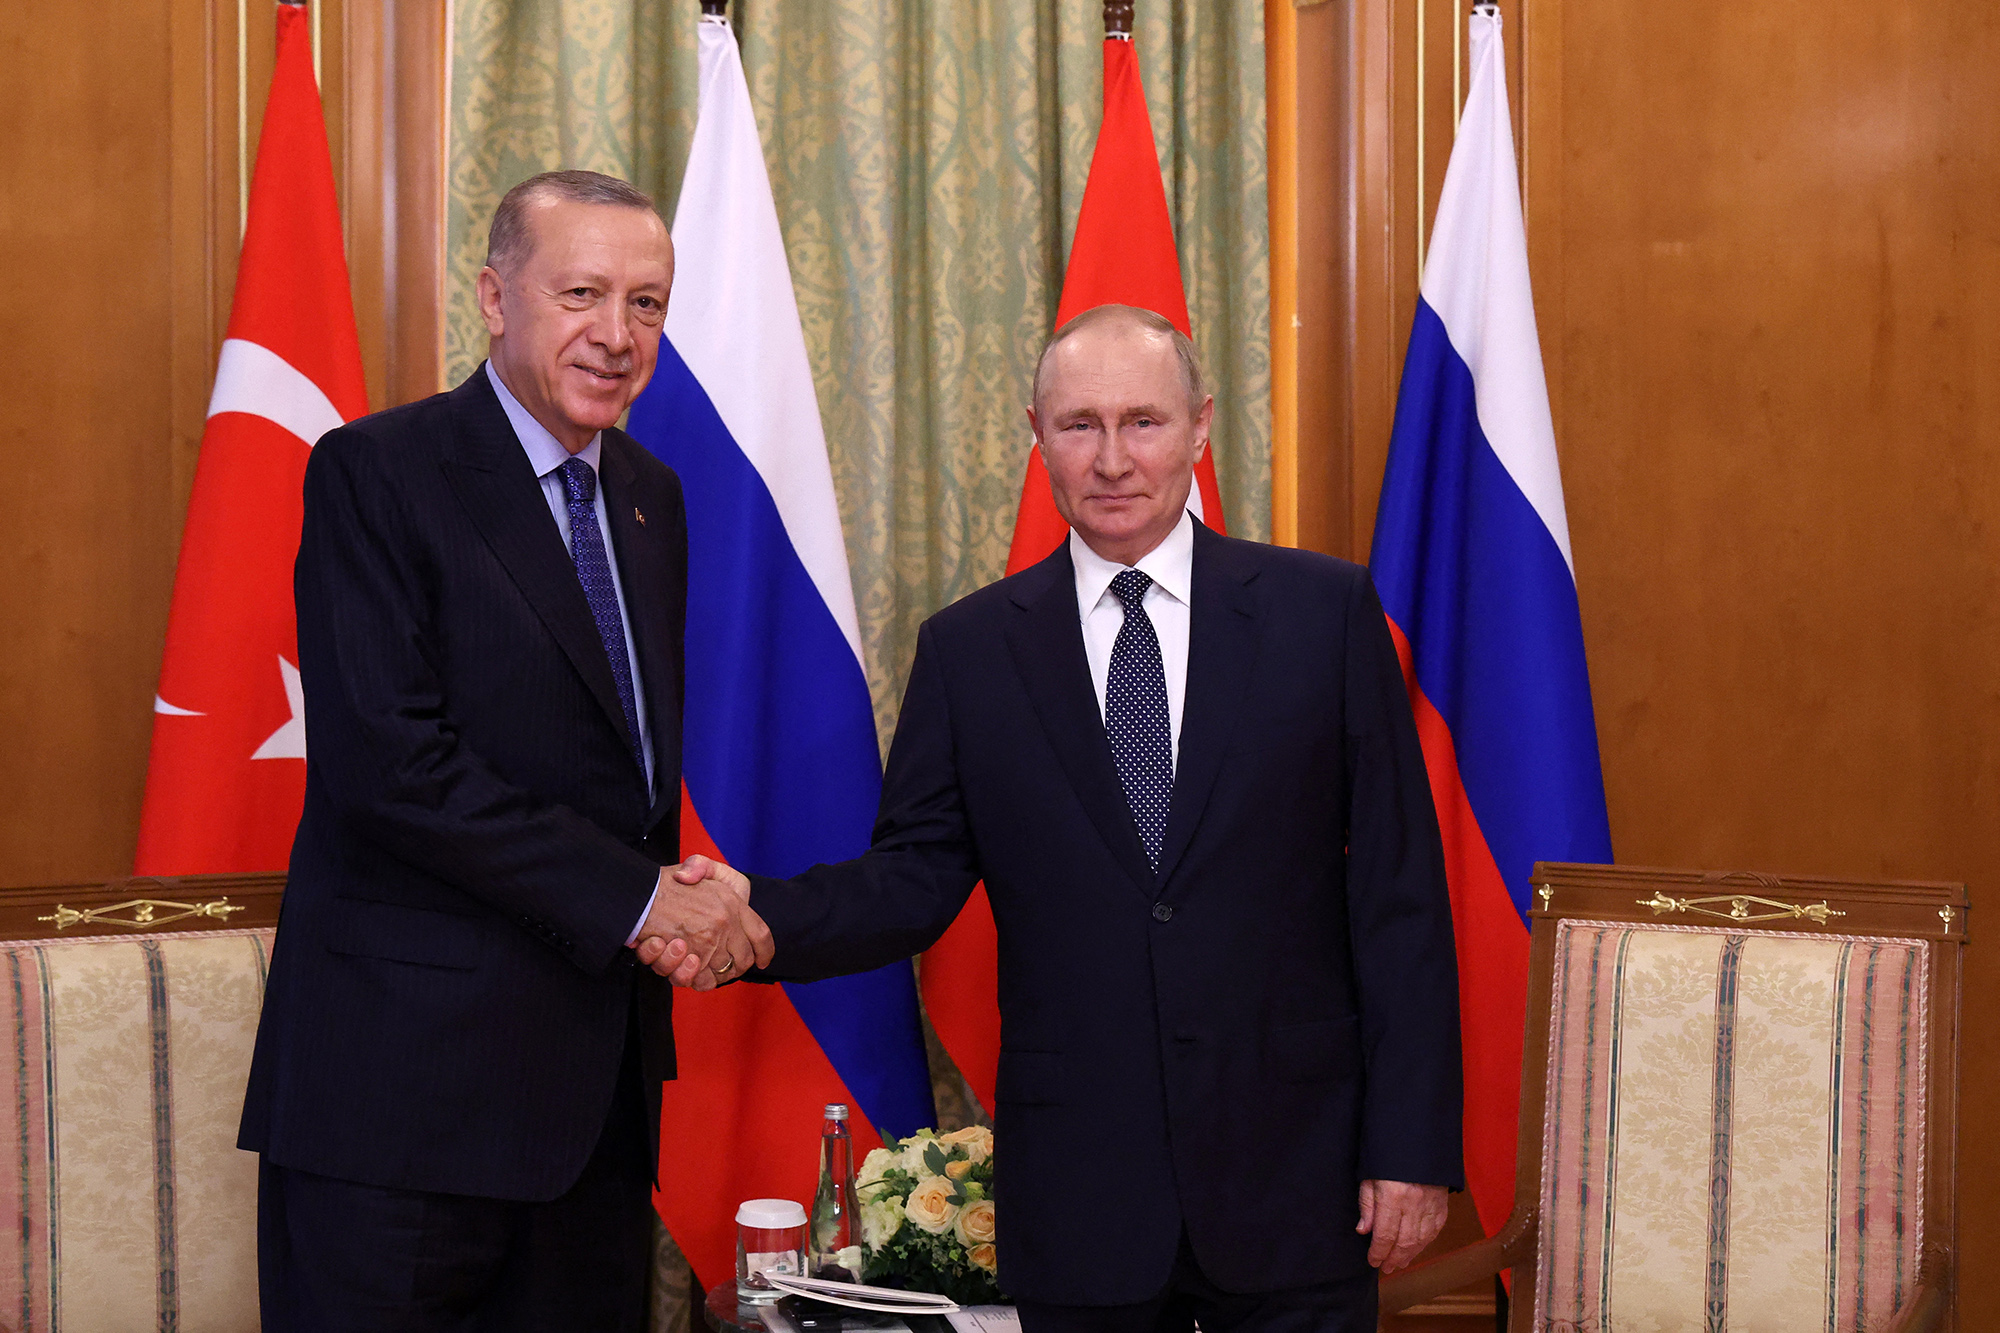 Der türkische Präsident Recep Tayyip Erdogan und der russische Präsident Wladimir Putin (Bild: Vyacheslav Prokofyev/AFP)